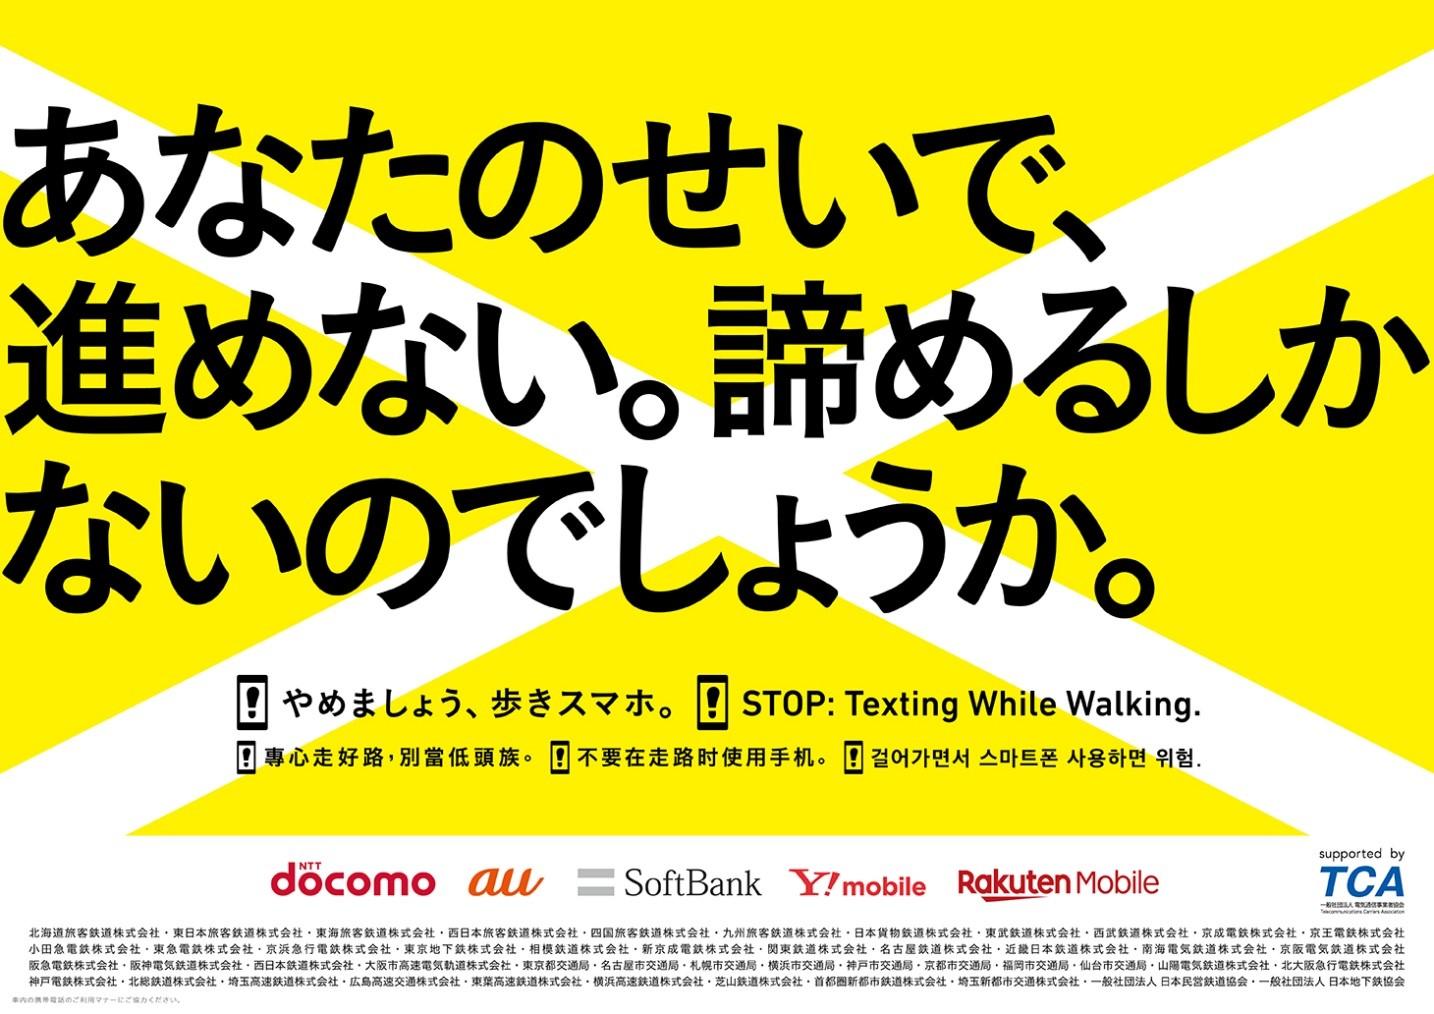 やめましょう 歩きスマホ キャンペーンを11月1日 金曜日 から実施します Osaka Metro